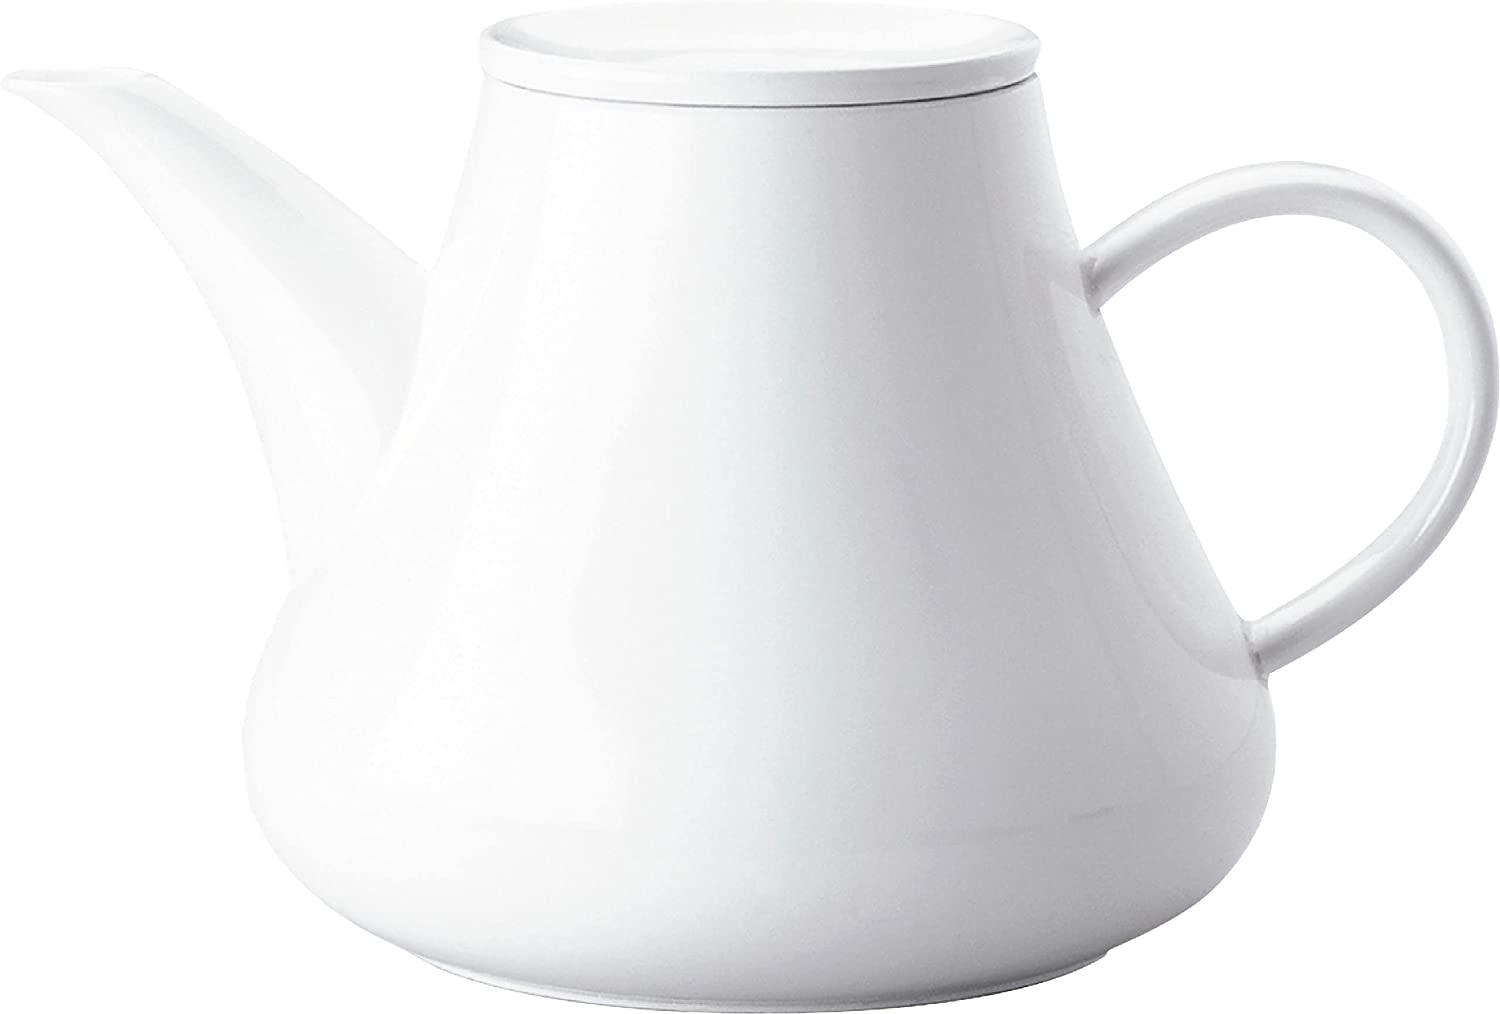 KAHLA Five Senses Coffee/tea Pot 1-1/2 Quart, White Color, 1 Piece